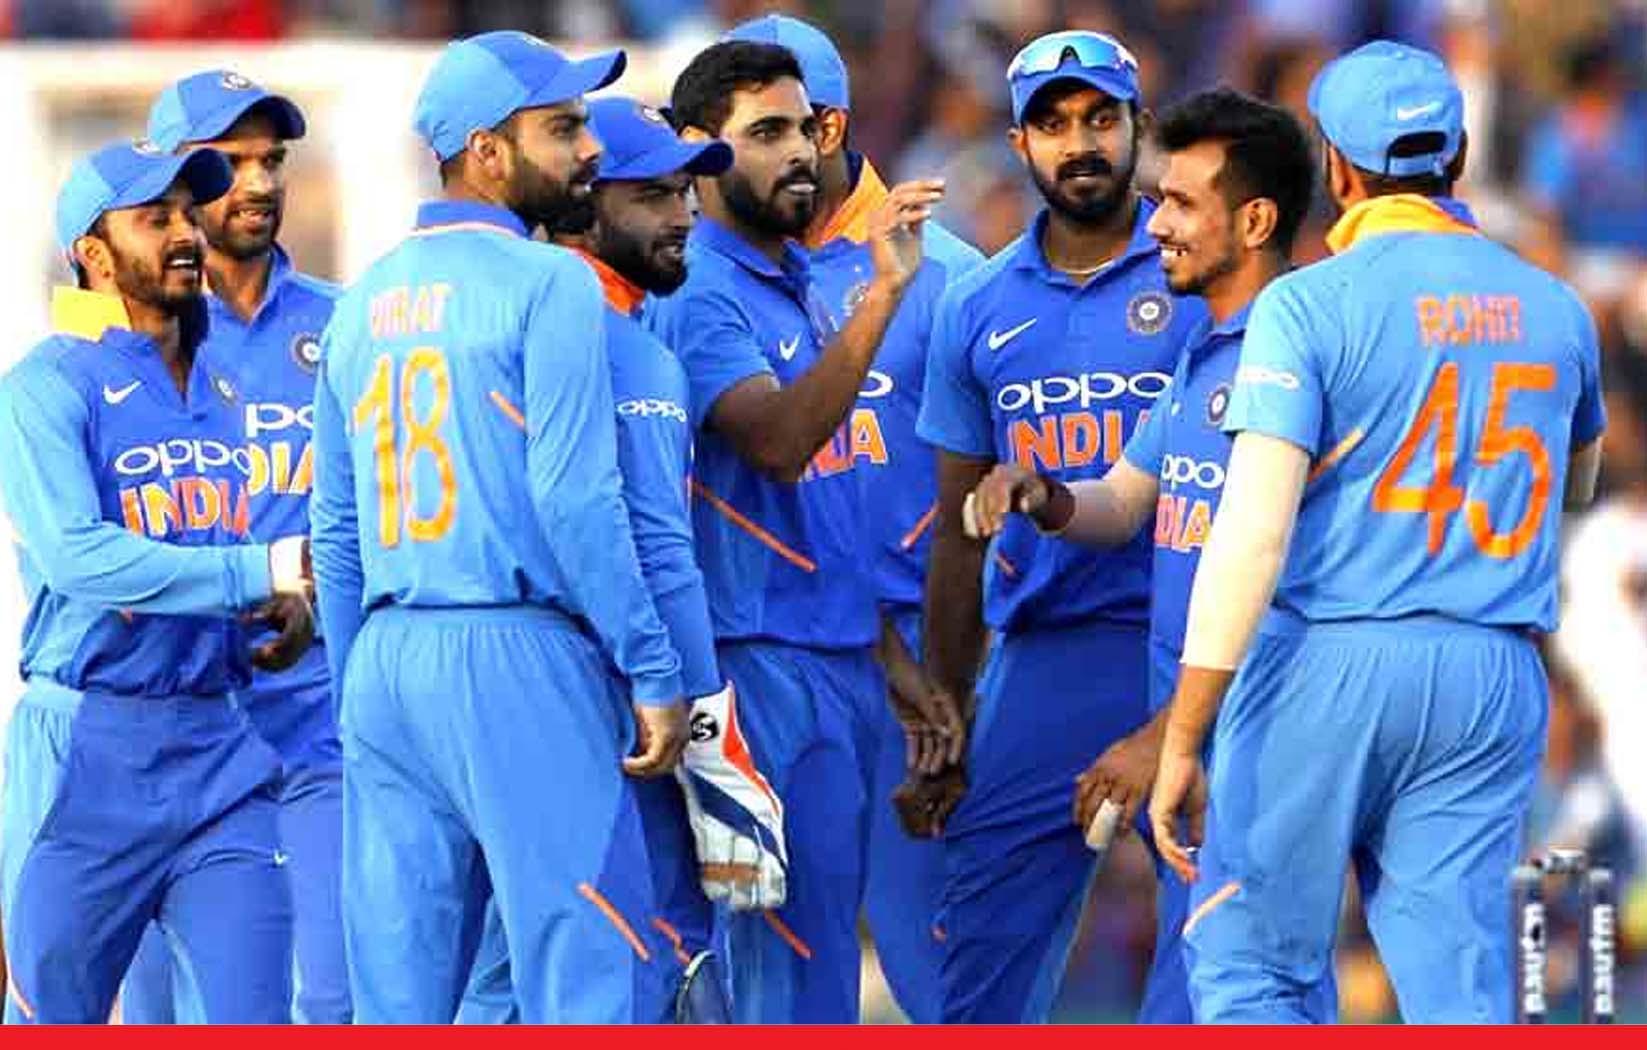 भारत vs श्रीलंका के बीच पहला टी20 मैच कल, जानें कहां देखें लाइव टेलीकास्ट